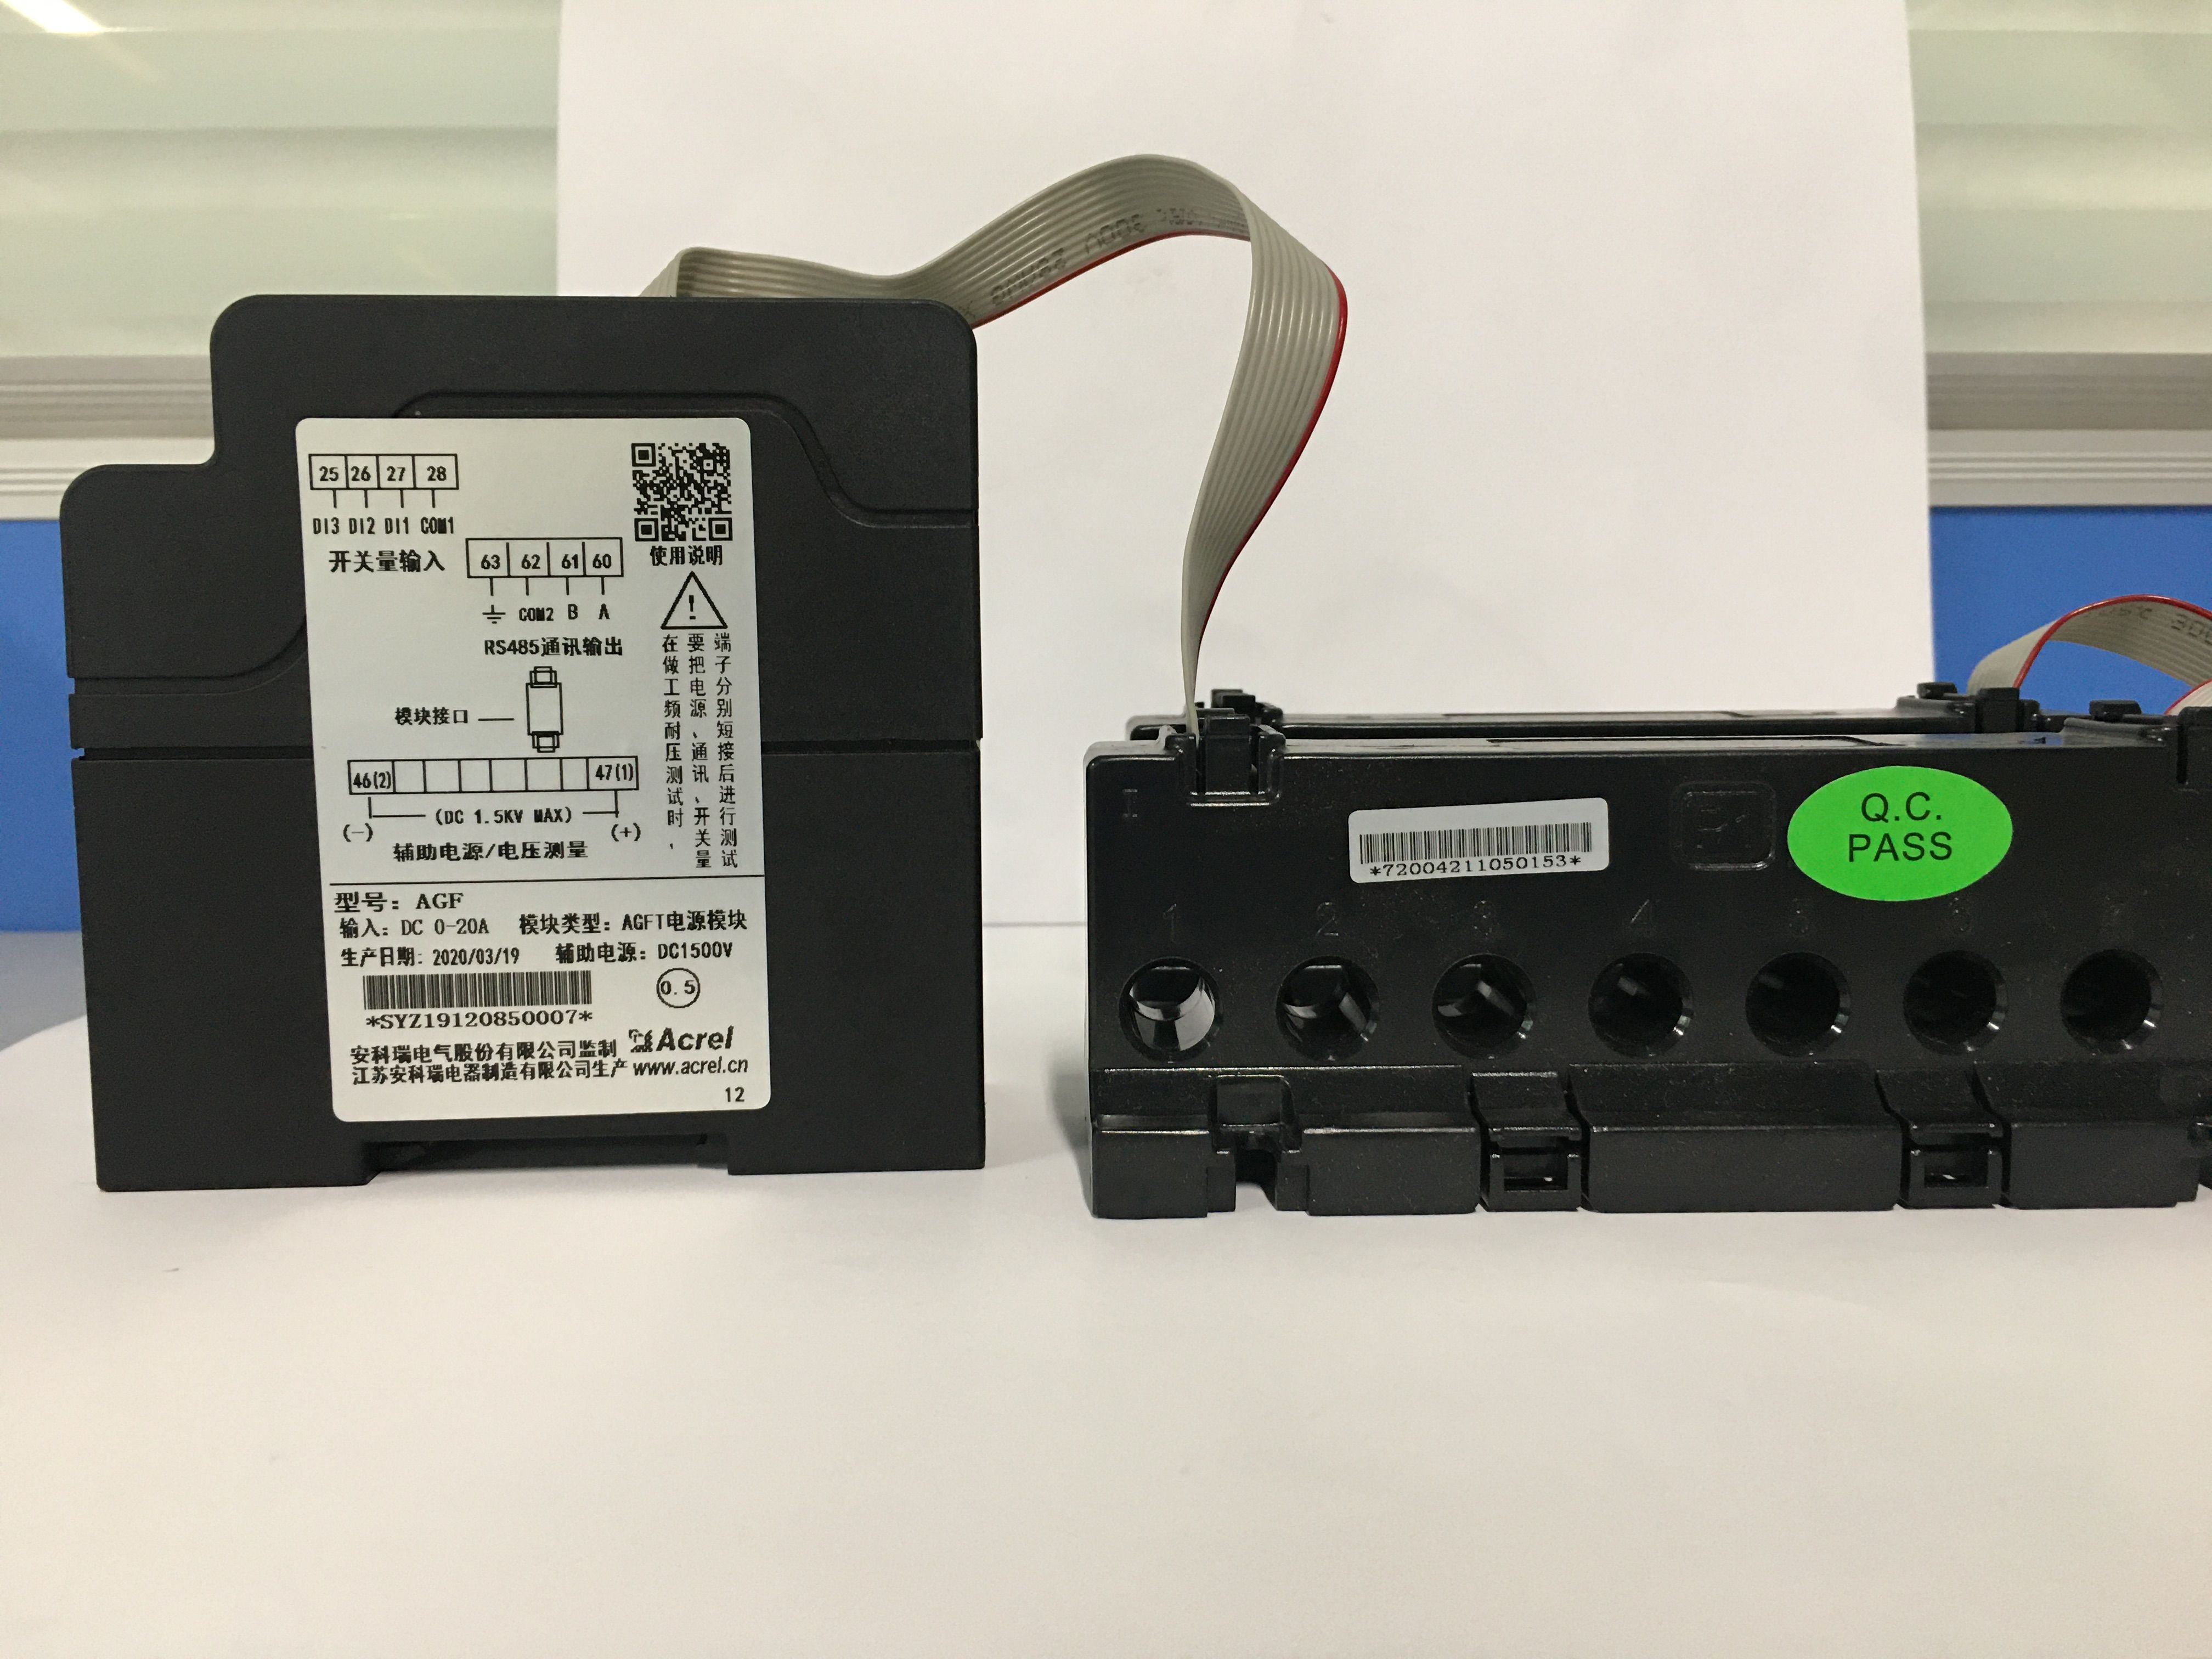 AGFT Smart Energy Meter for PV Combiner Box(solar muliti-loops power meter)